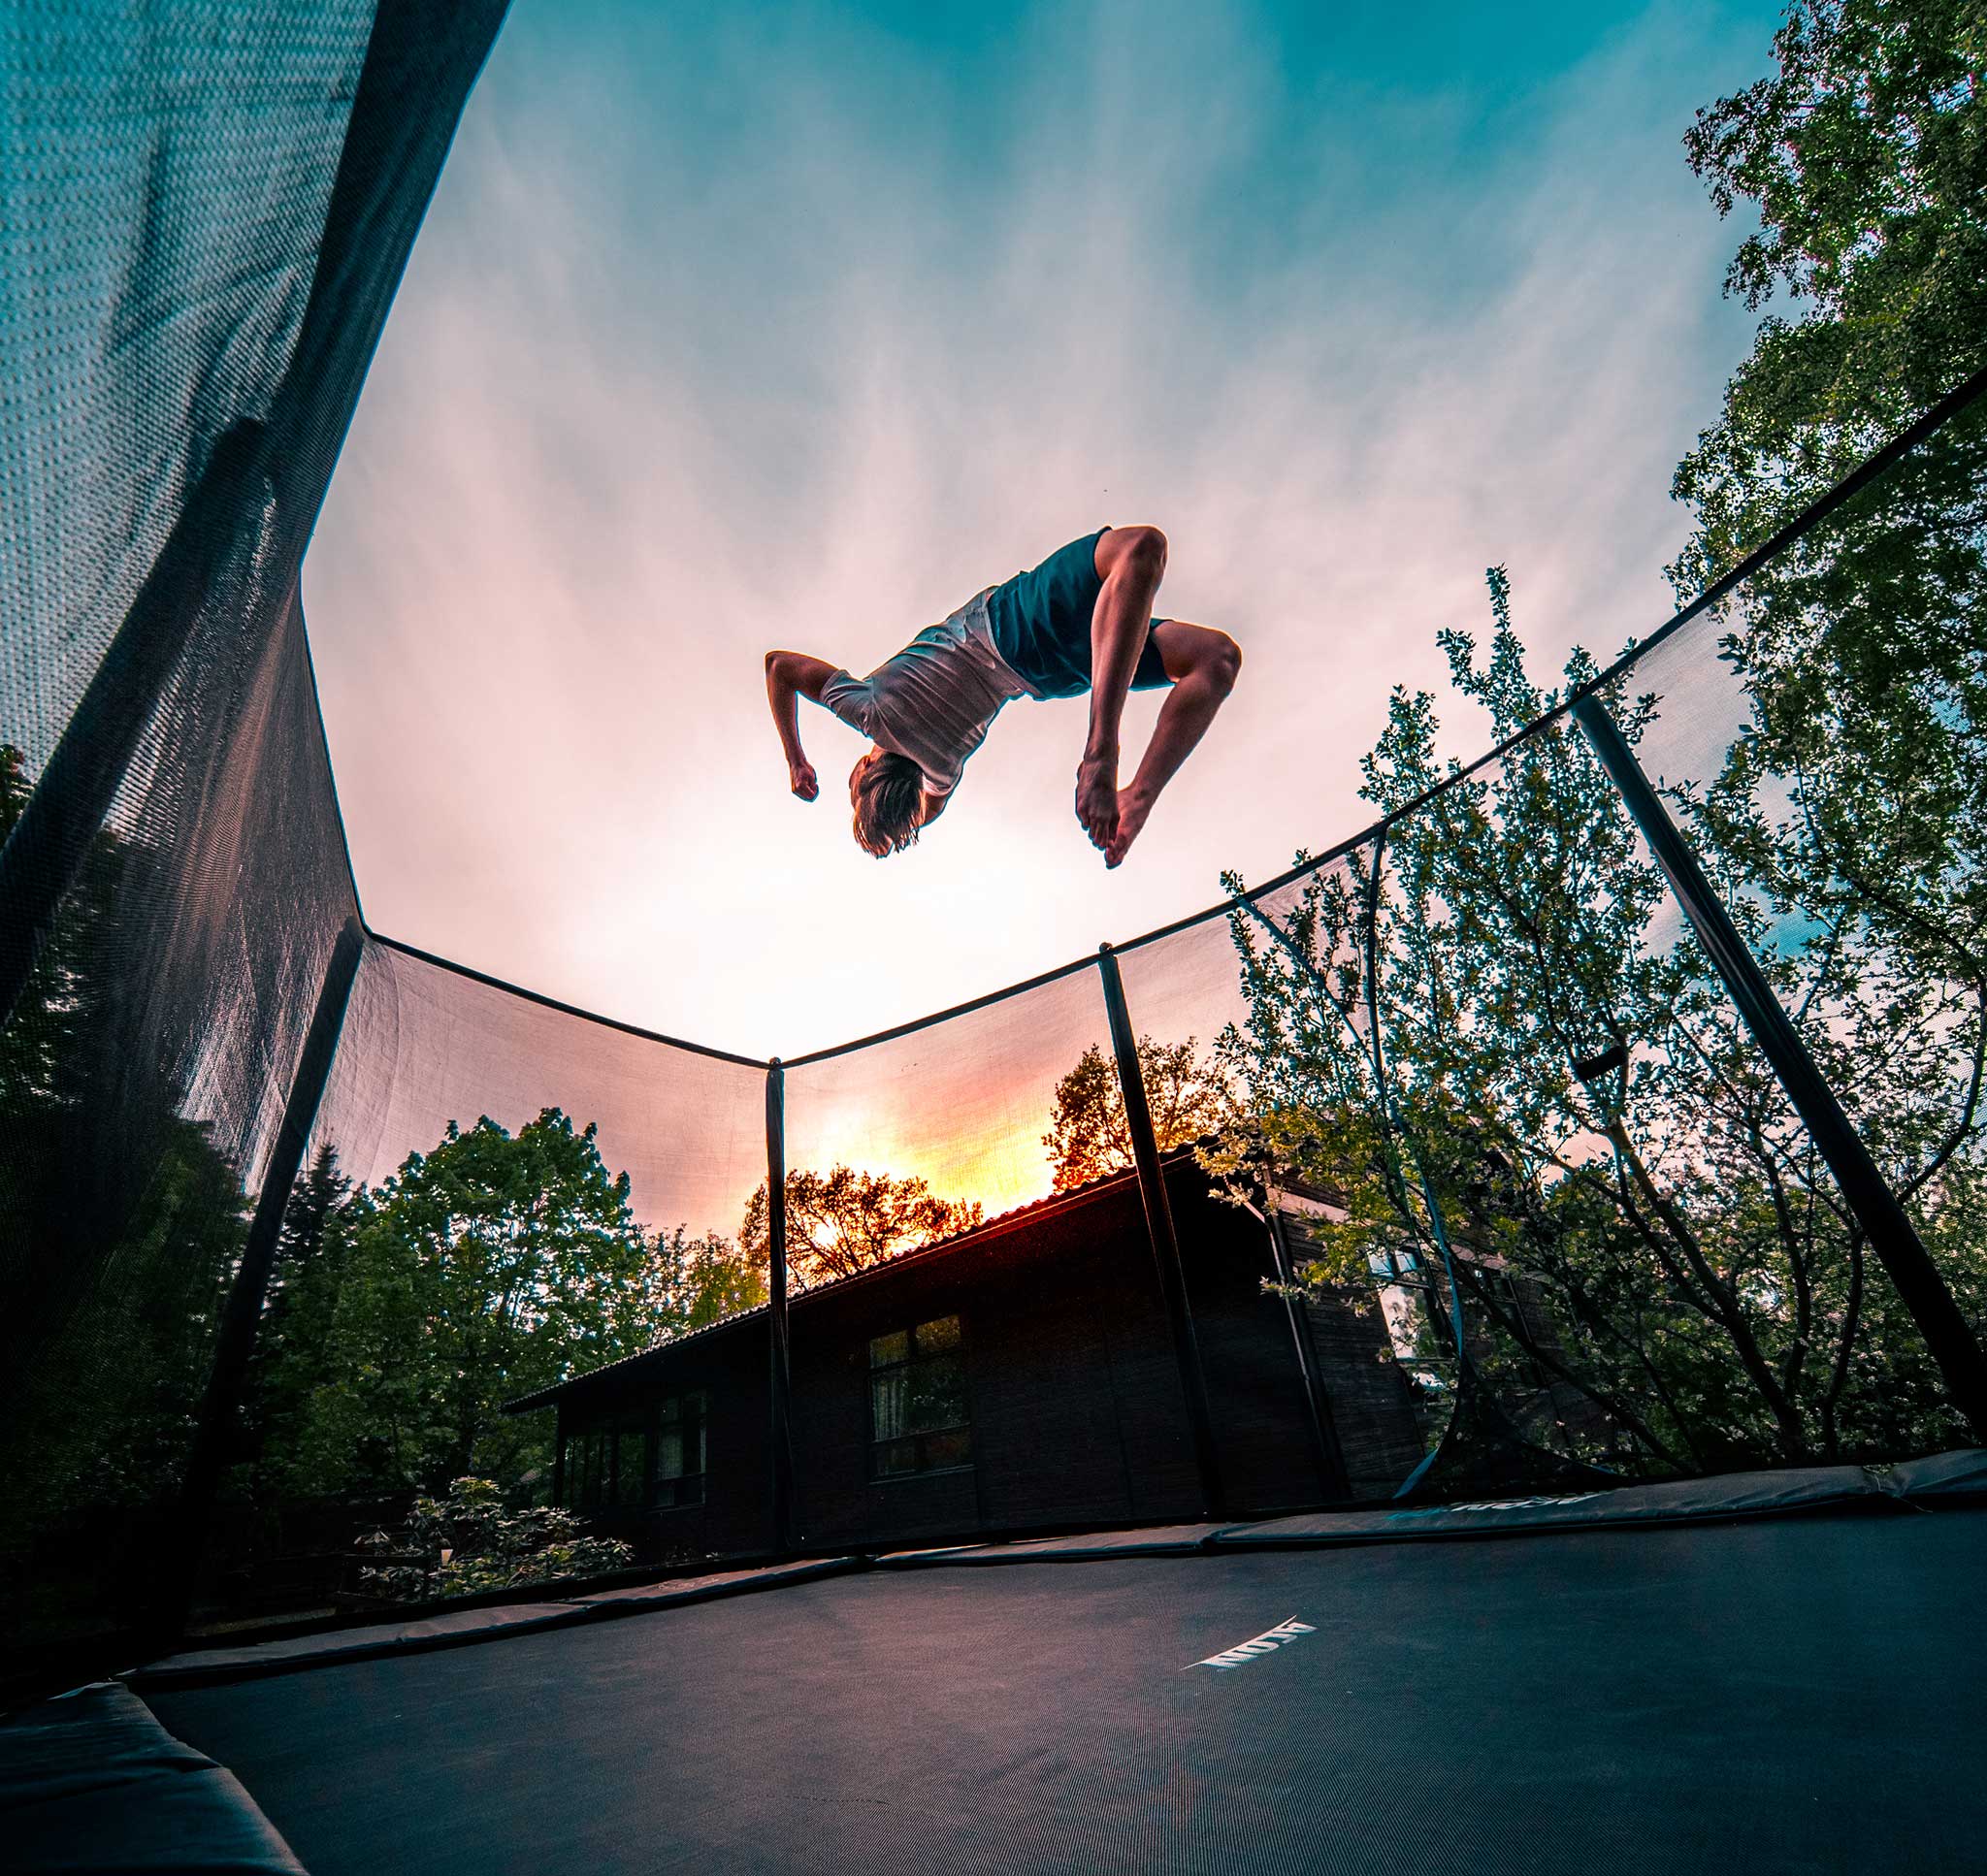 A boy doing a backflip on an Acon 16 HD trampoline.